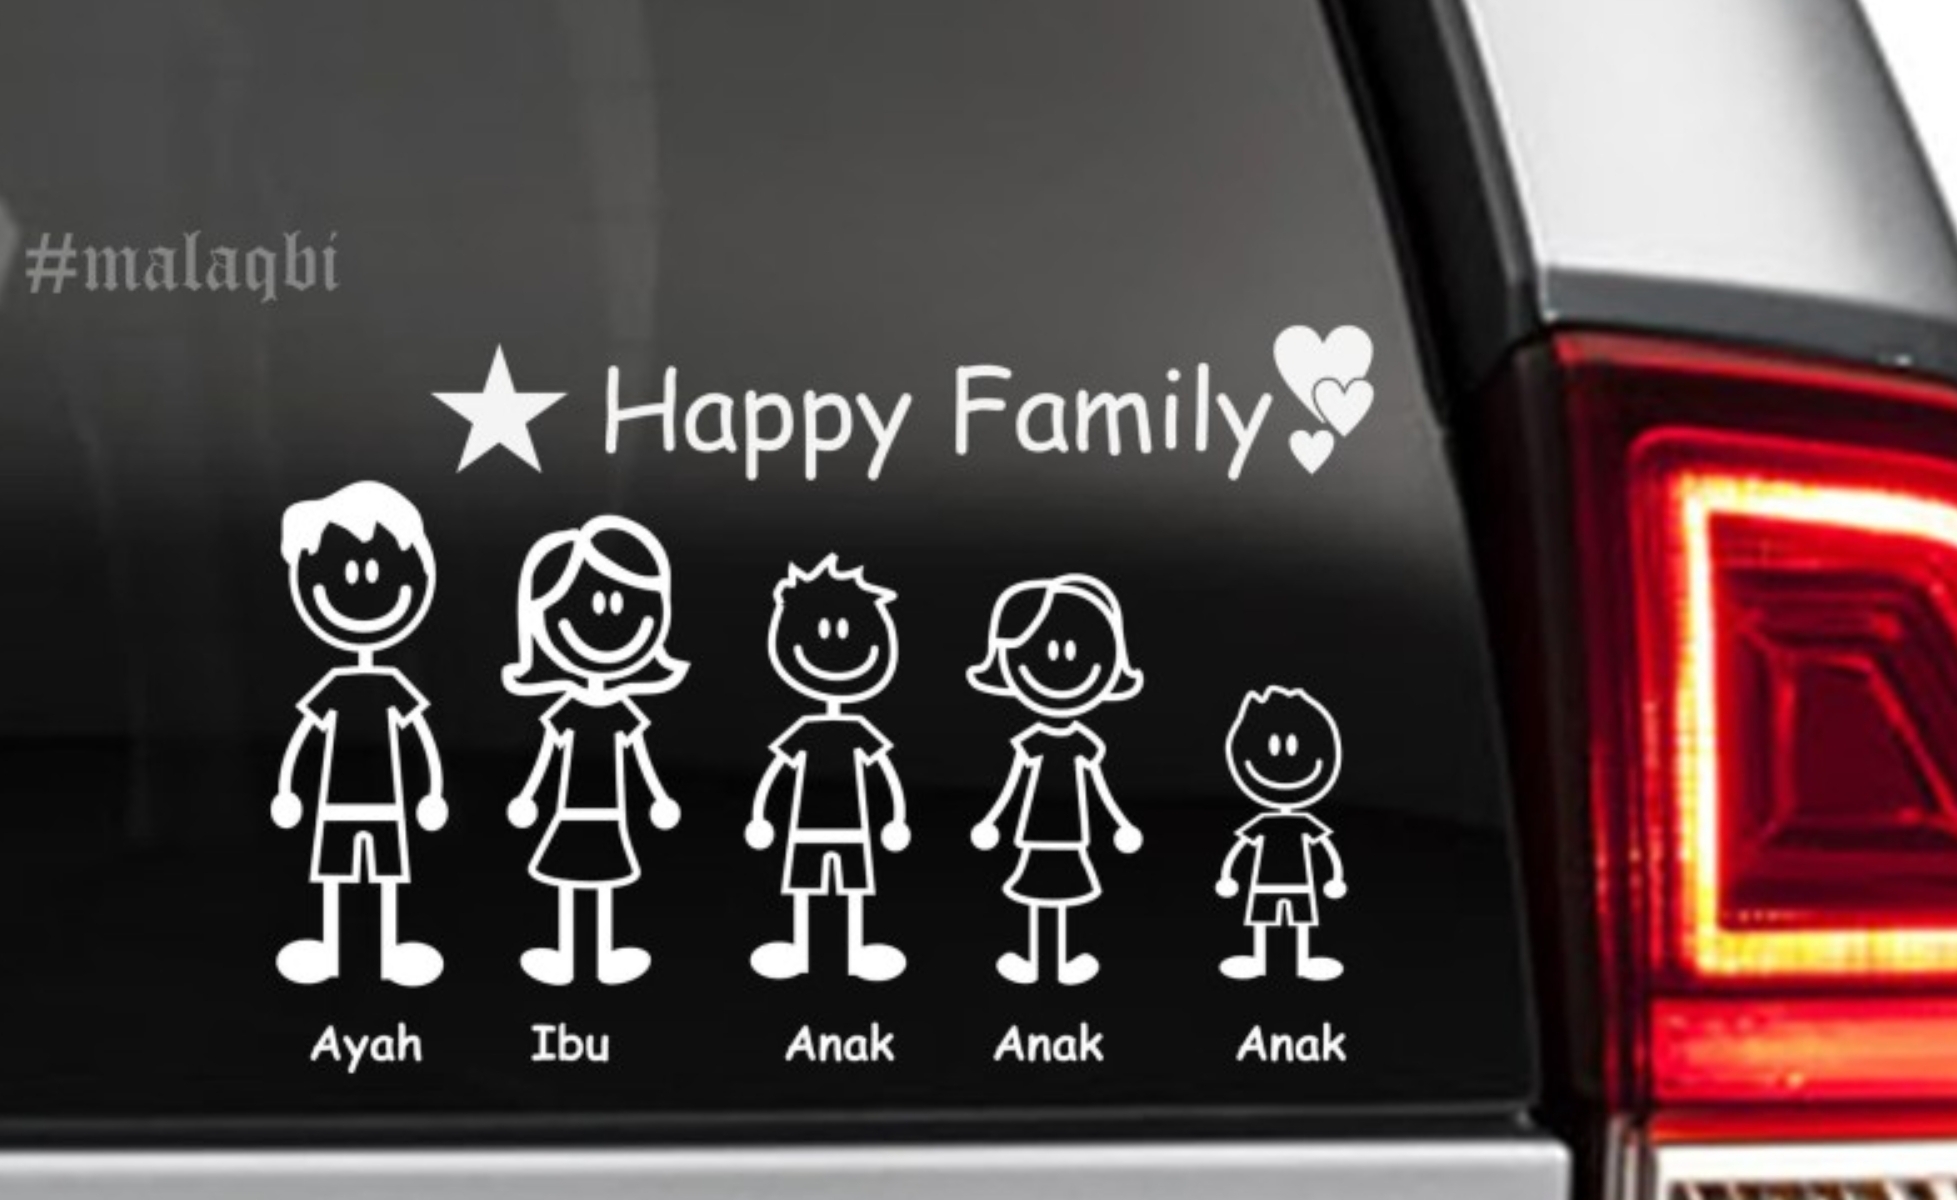 Sticker Happy Family di Mobil Ternyata Bisa Bahaya, Sebaiknya Jangan Dipasang